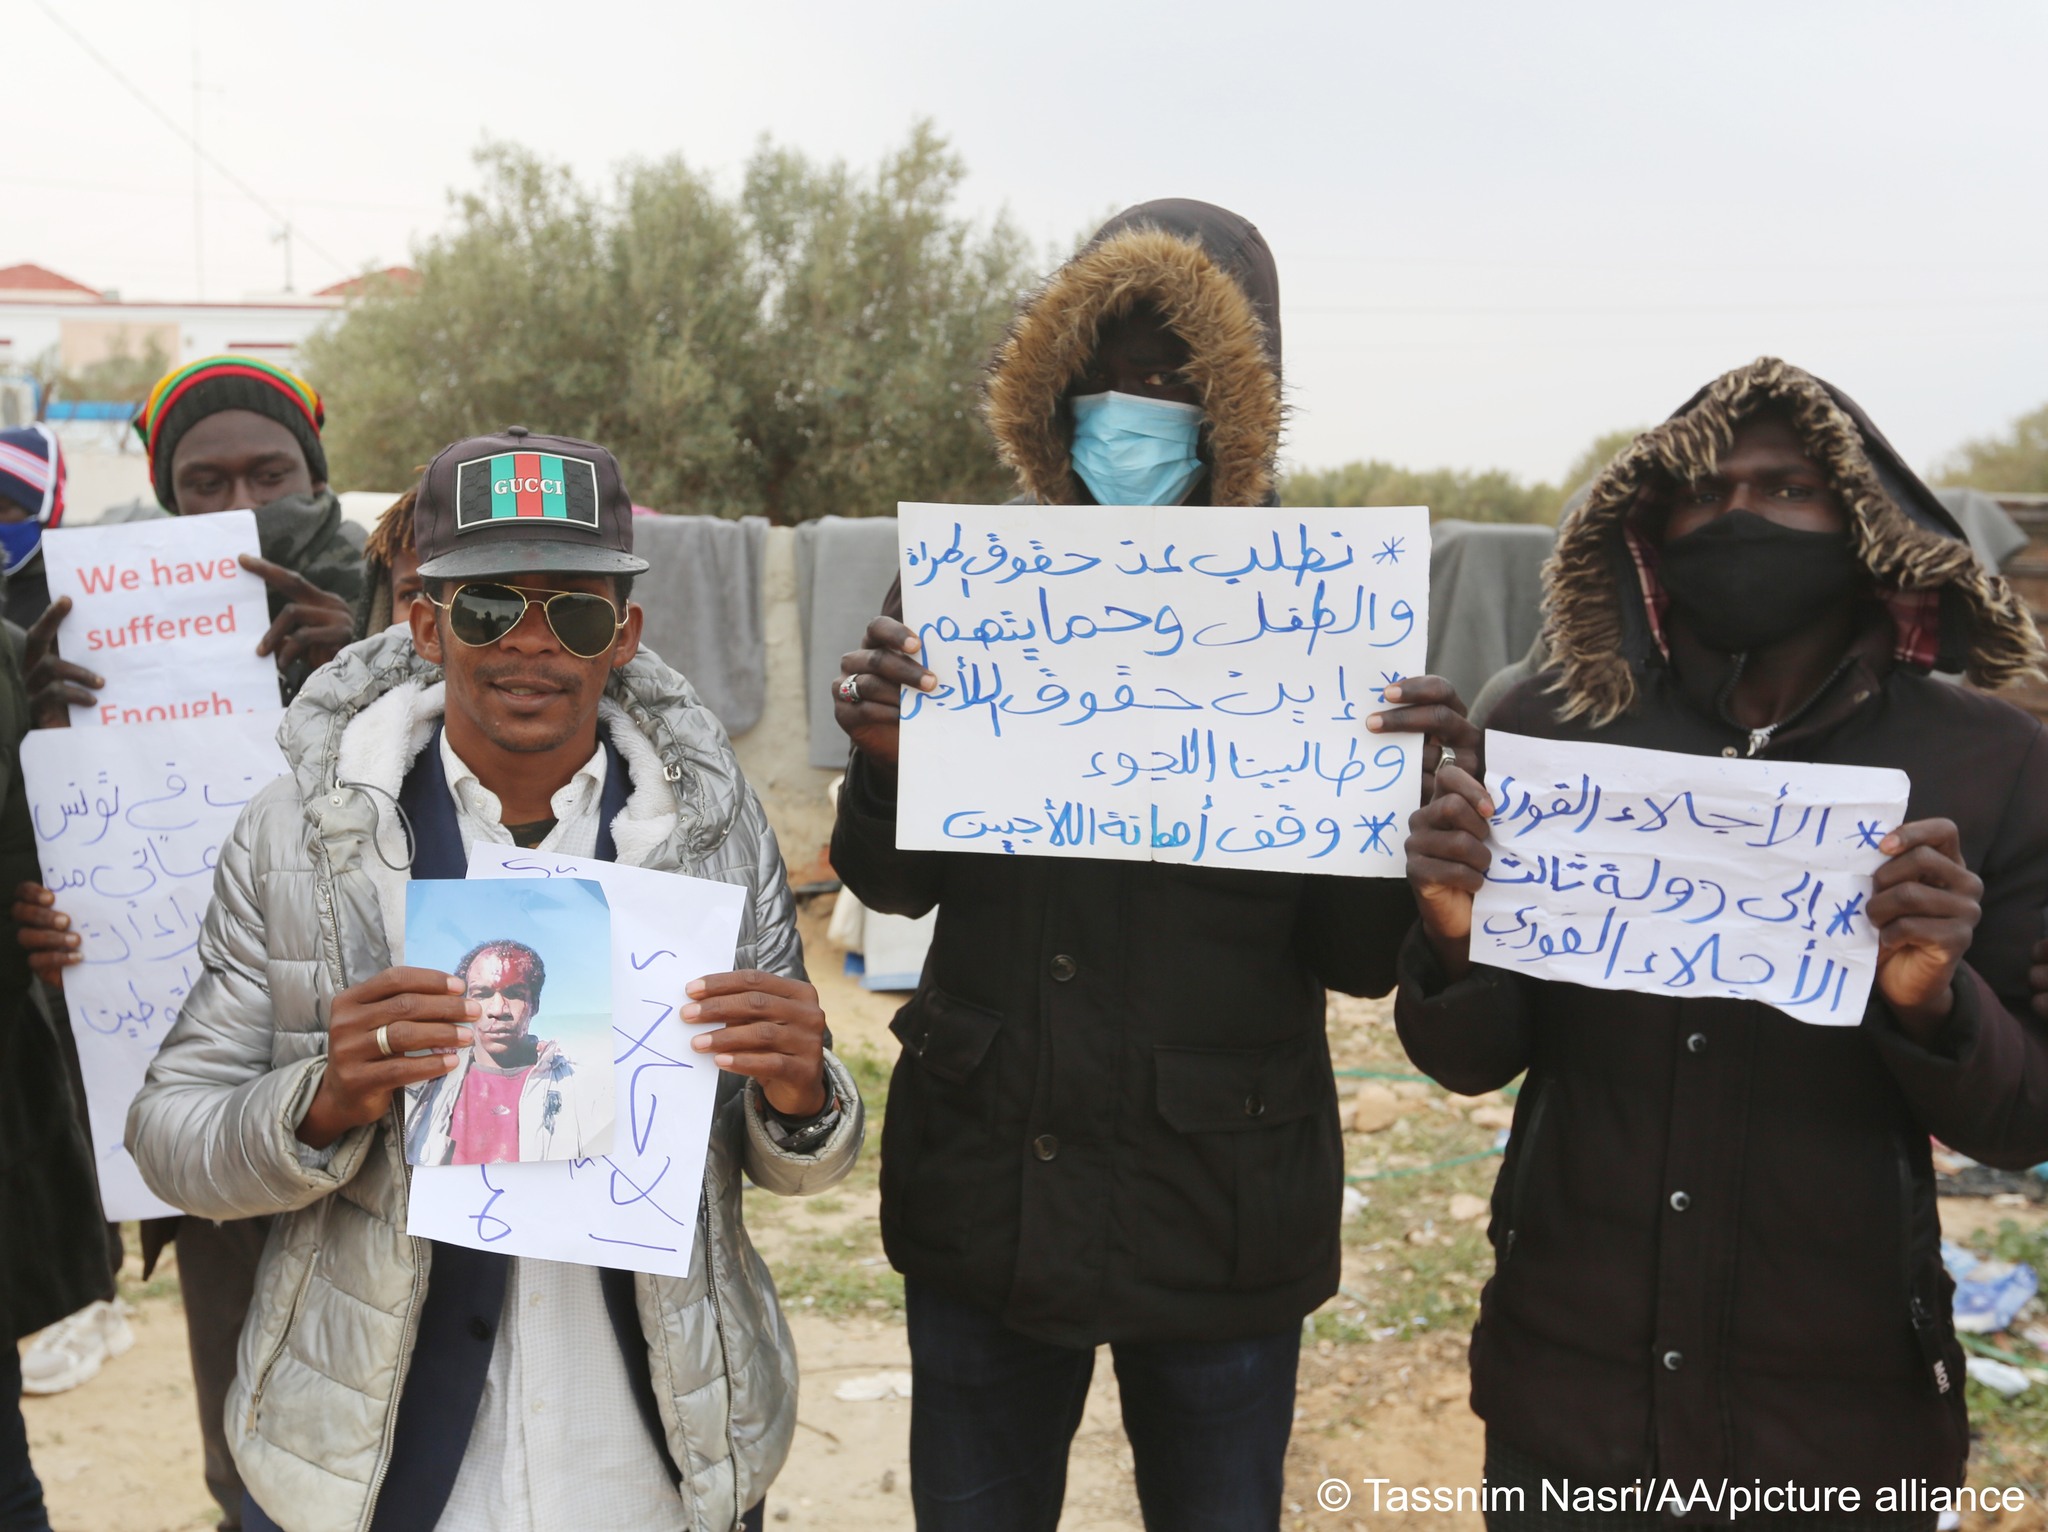 السلطات التونسية ترحّل مئات اللاجئين السودانيين الى قرب الحدود الليبية